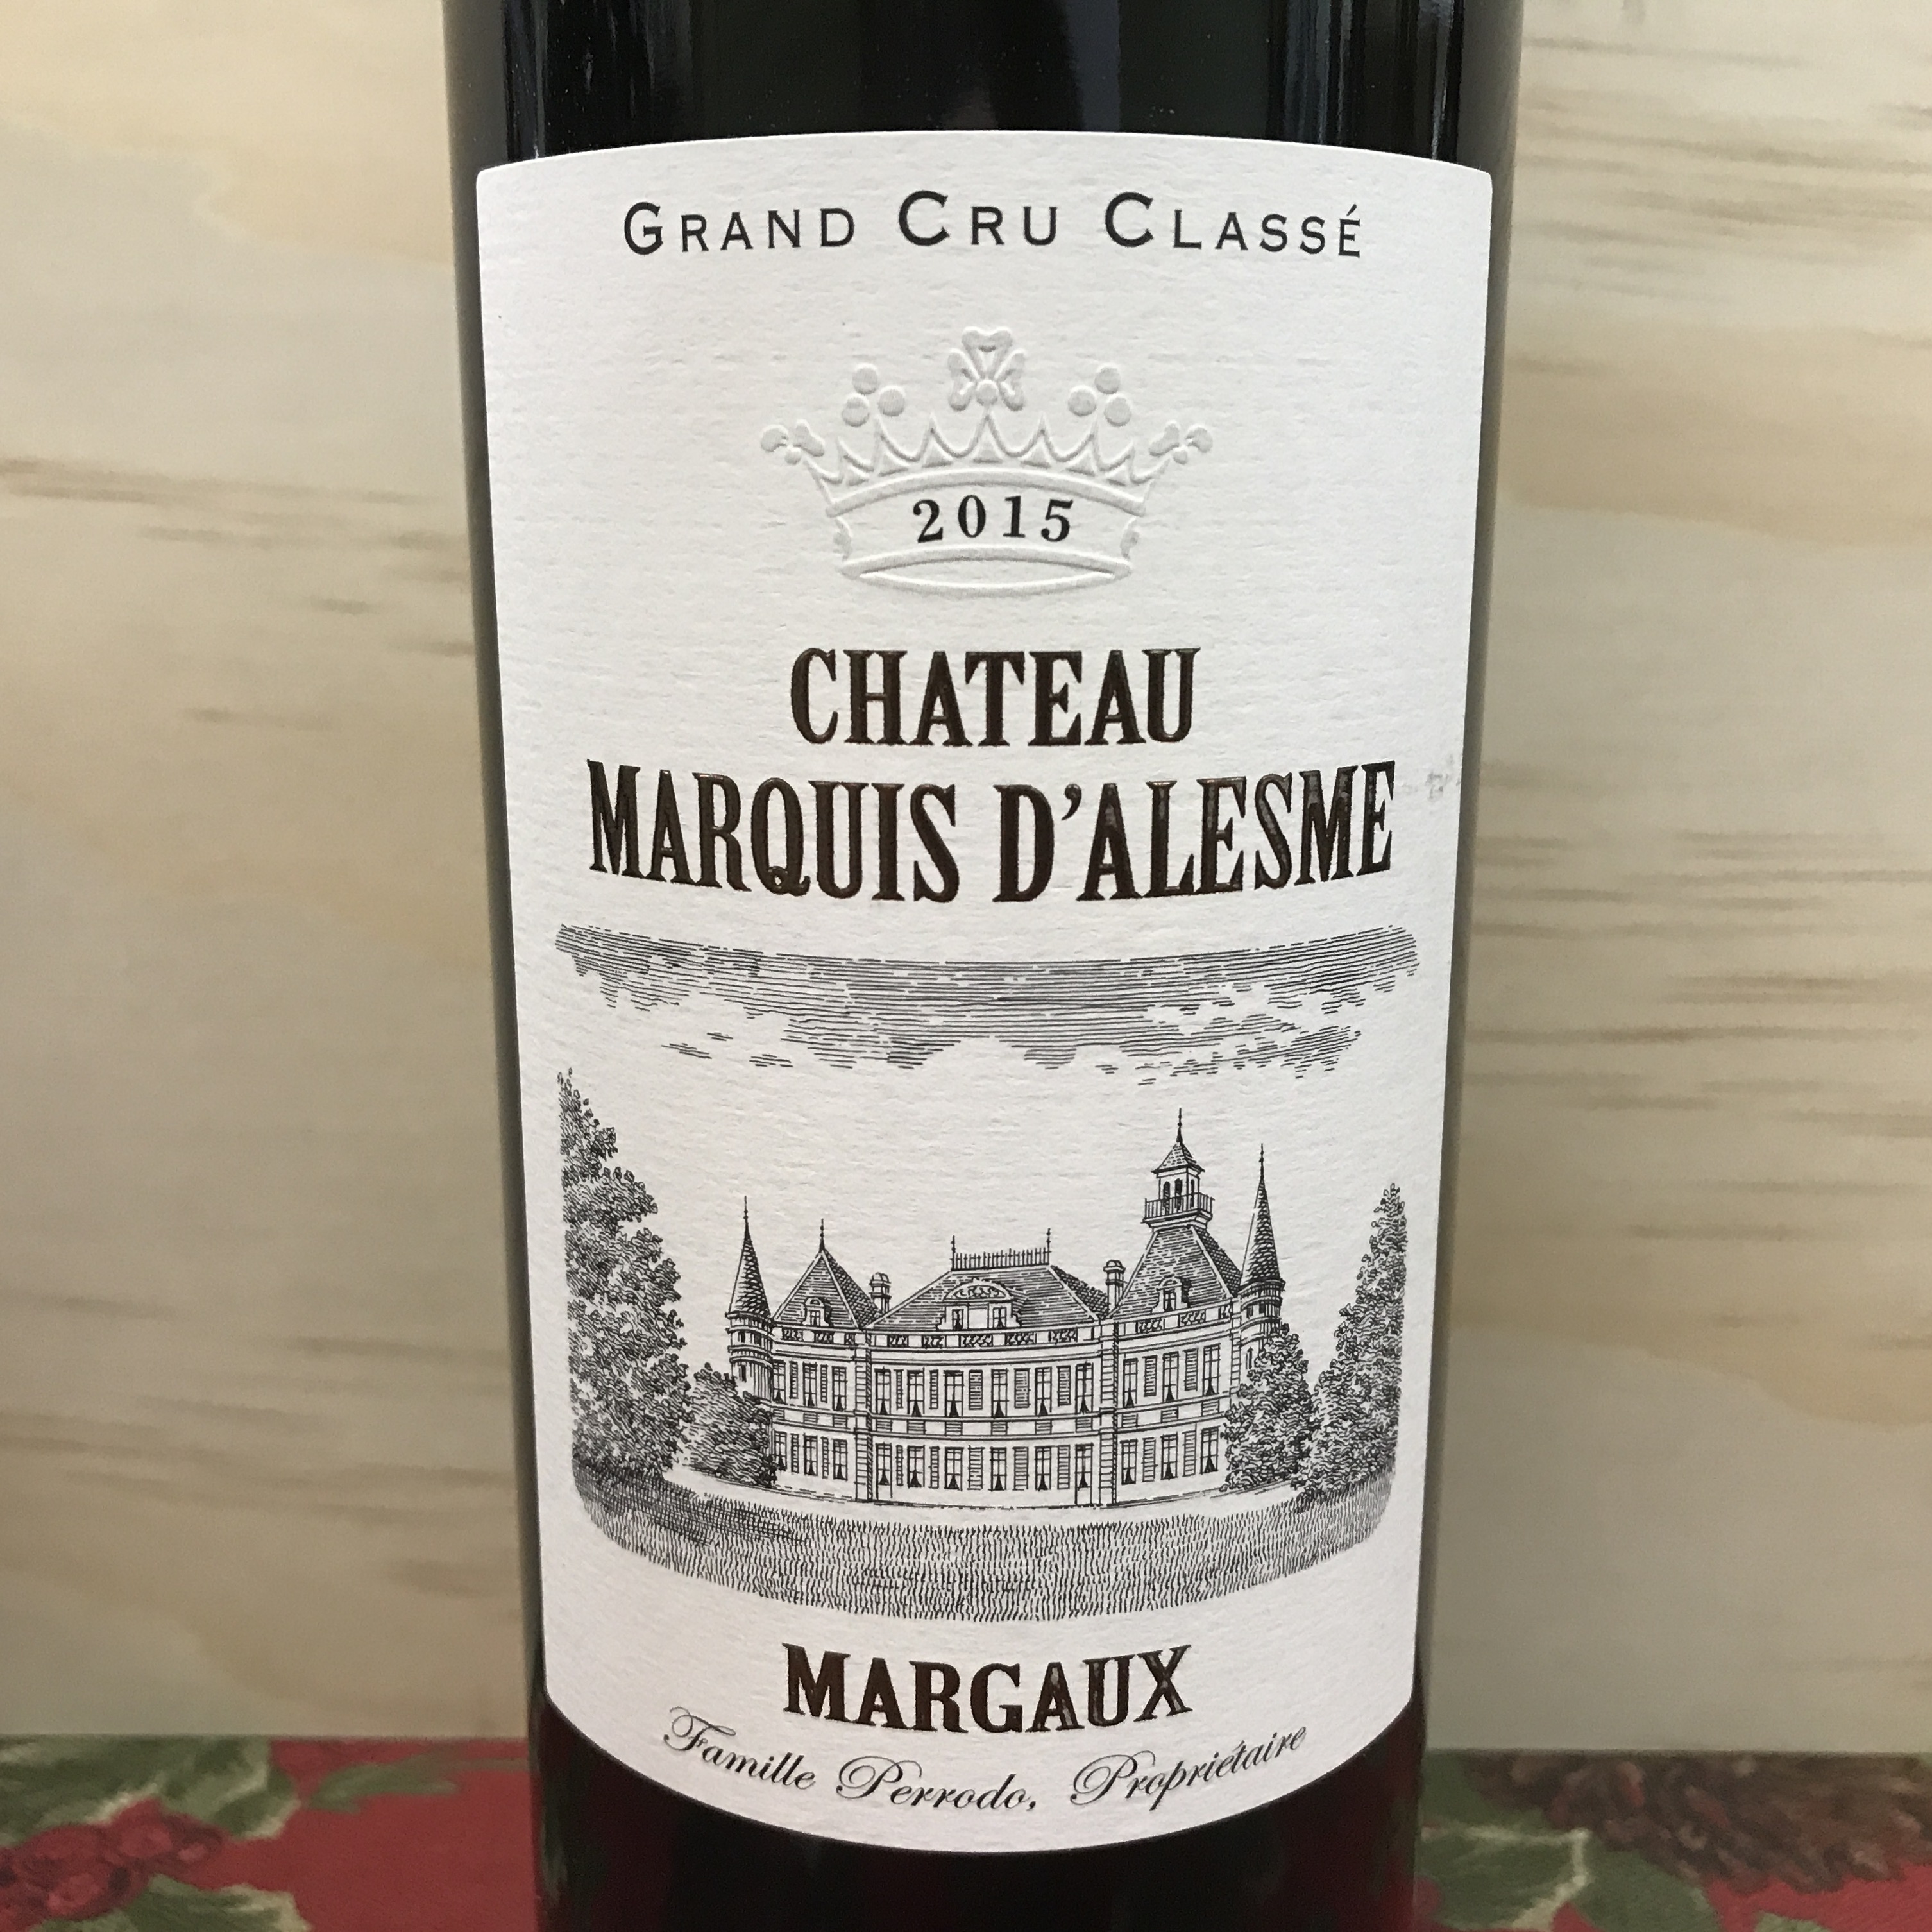 Chateau Marquis D'Alesme Margaux 2016 Grand Cru Classé